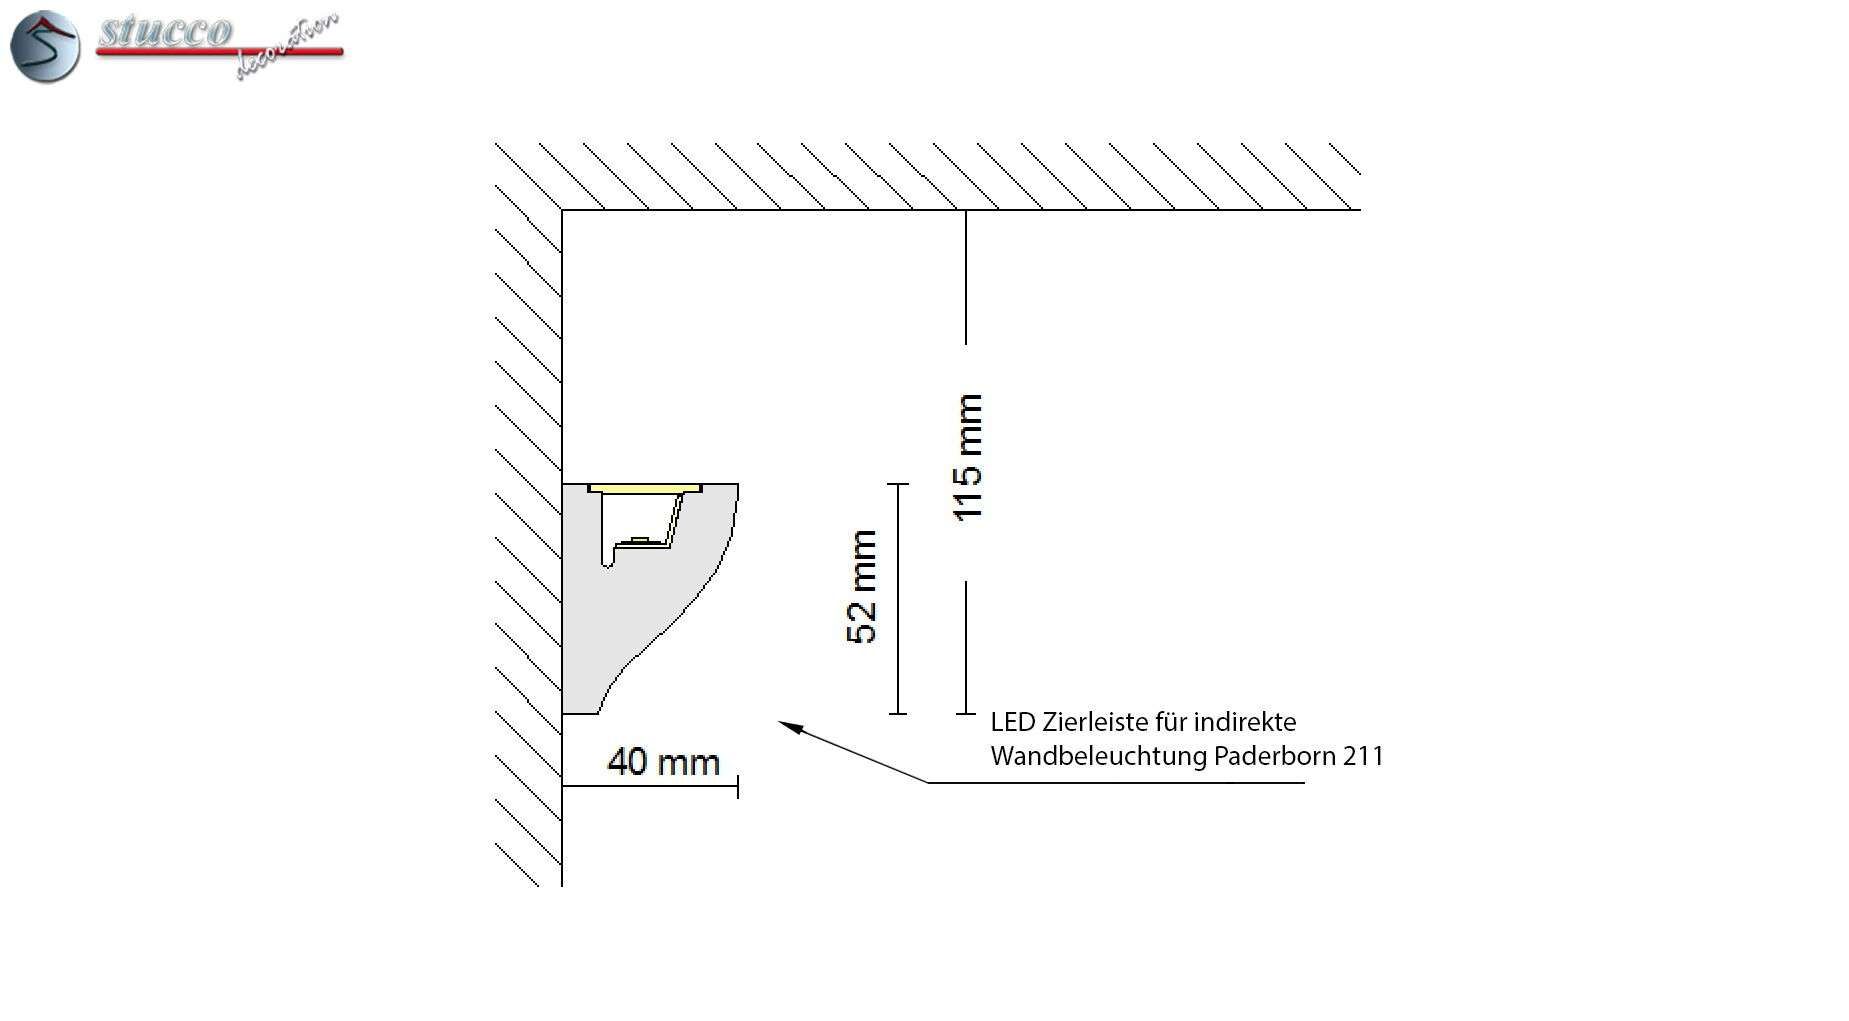 LED Zierleiste für indirekte Wandbeleuchtung Paderborn 211 Plexi Plus